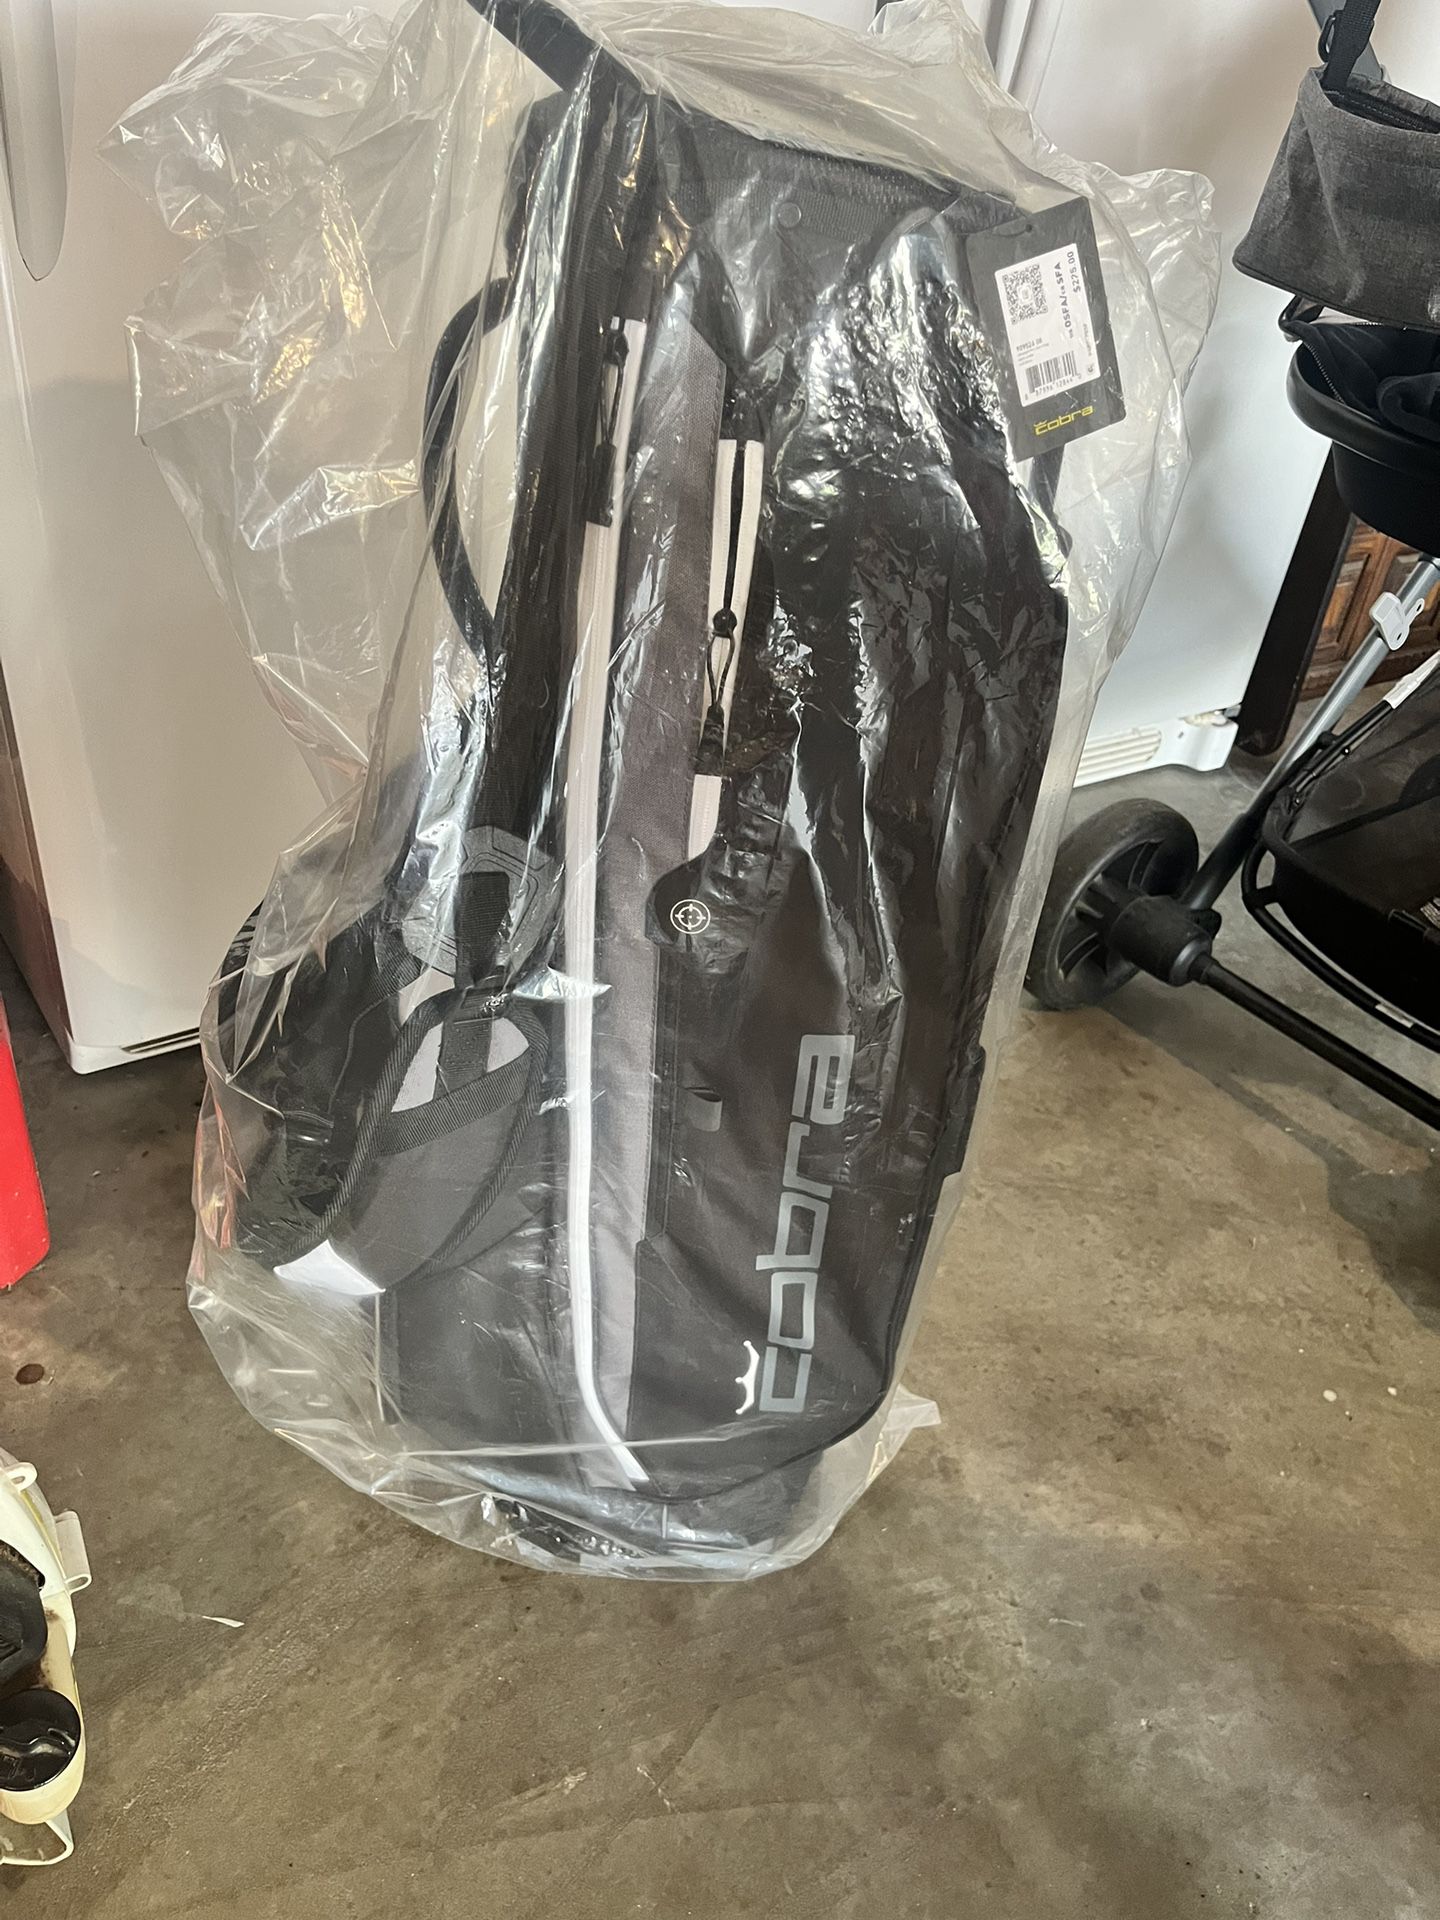 Brand New Cobra Ultralight Golf Bag